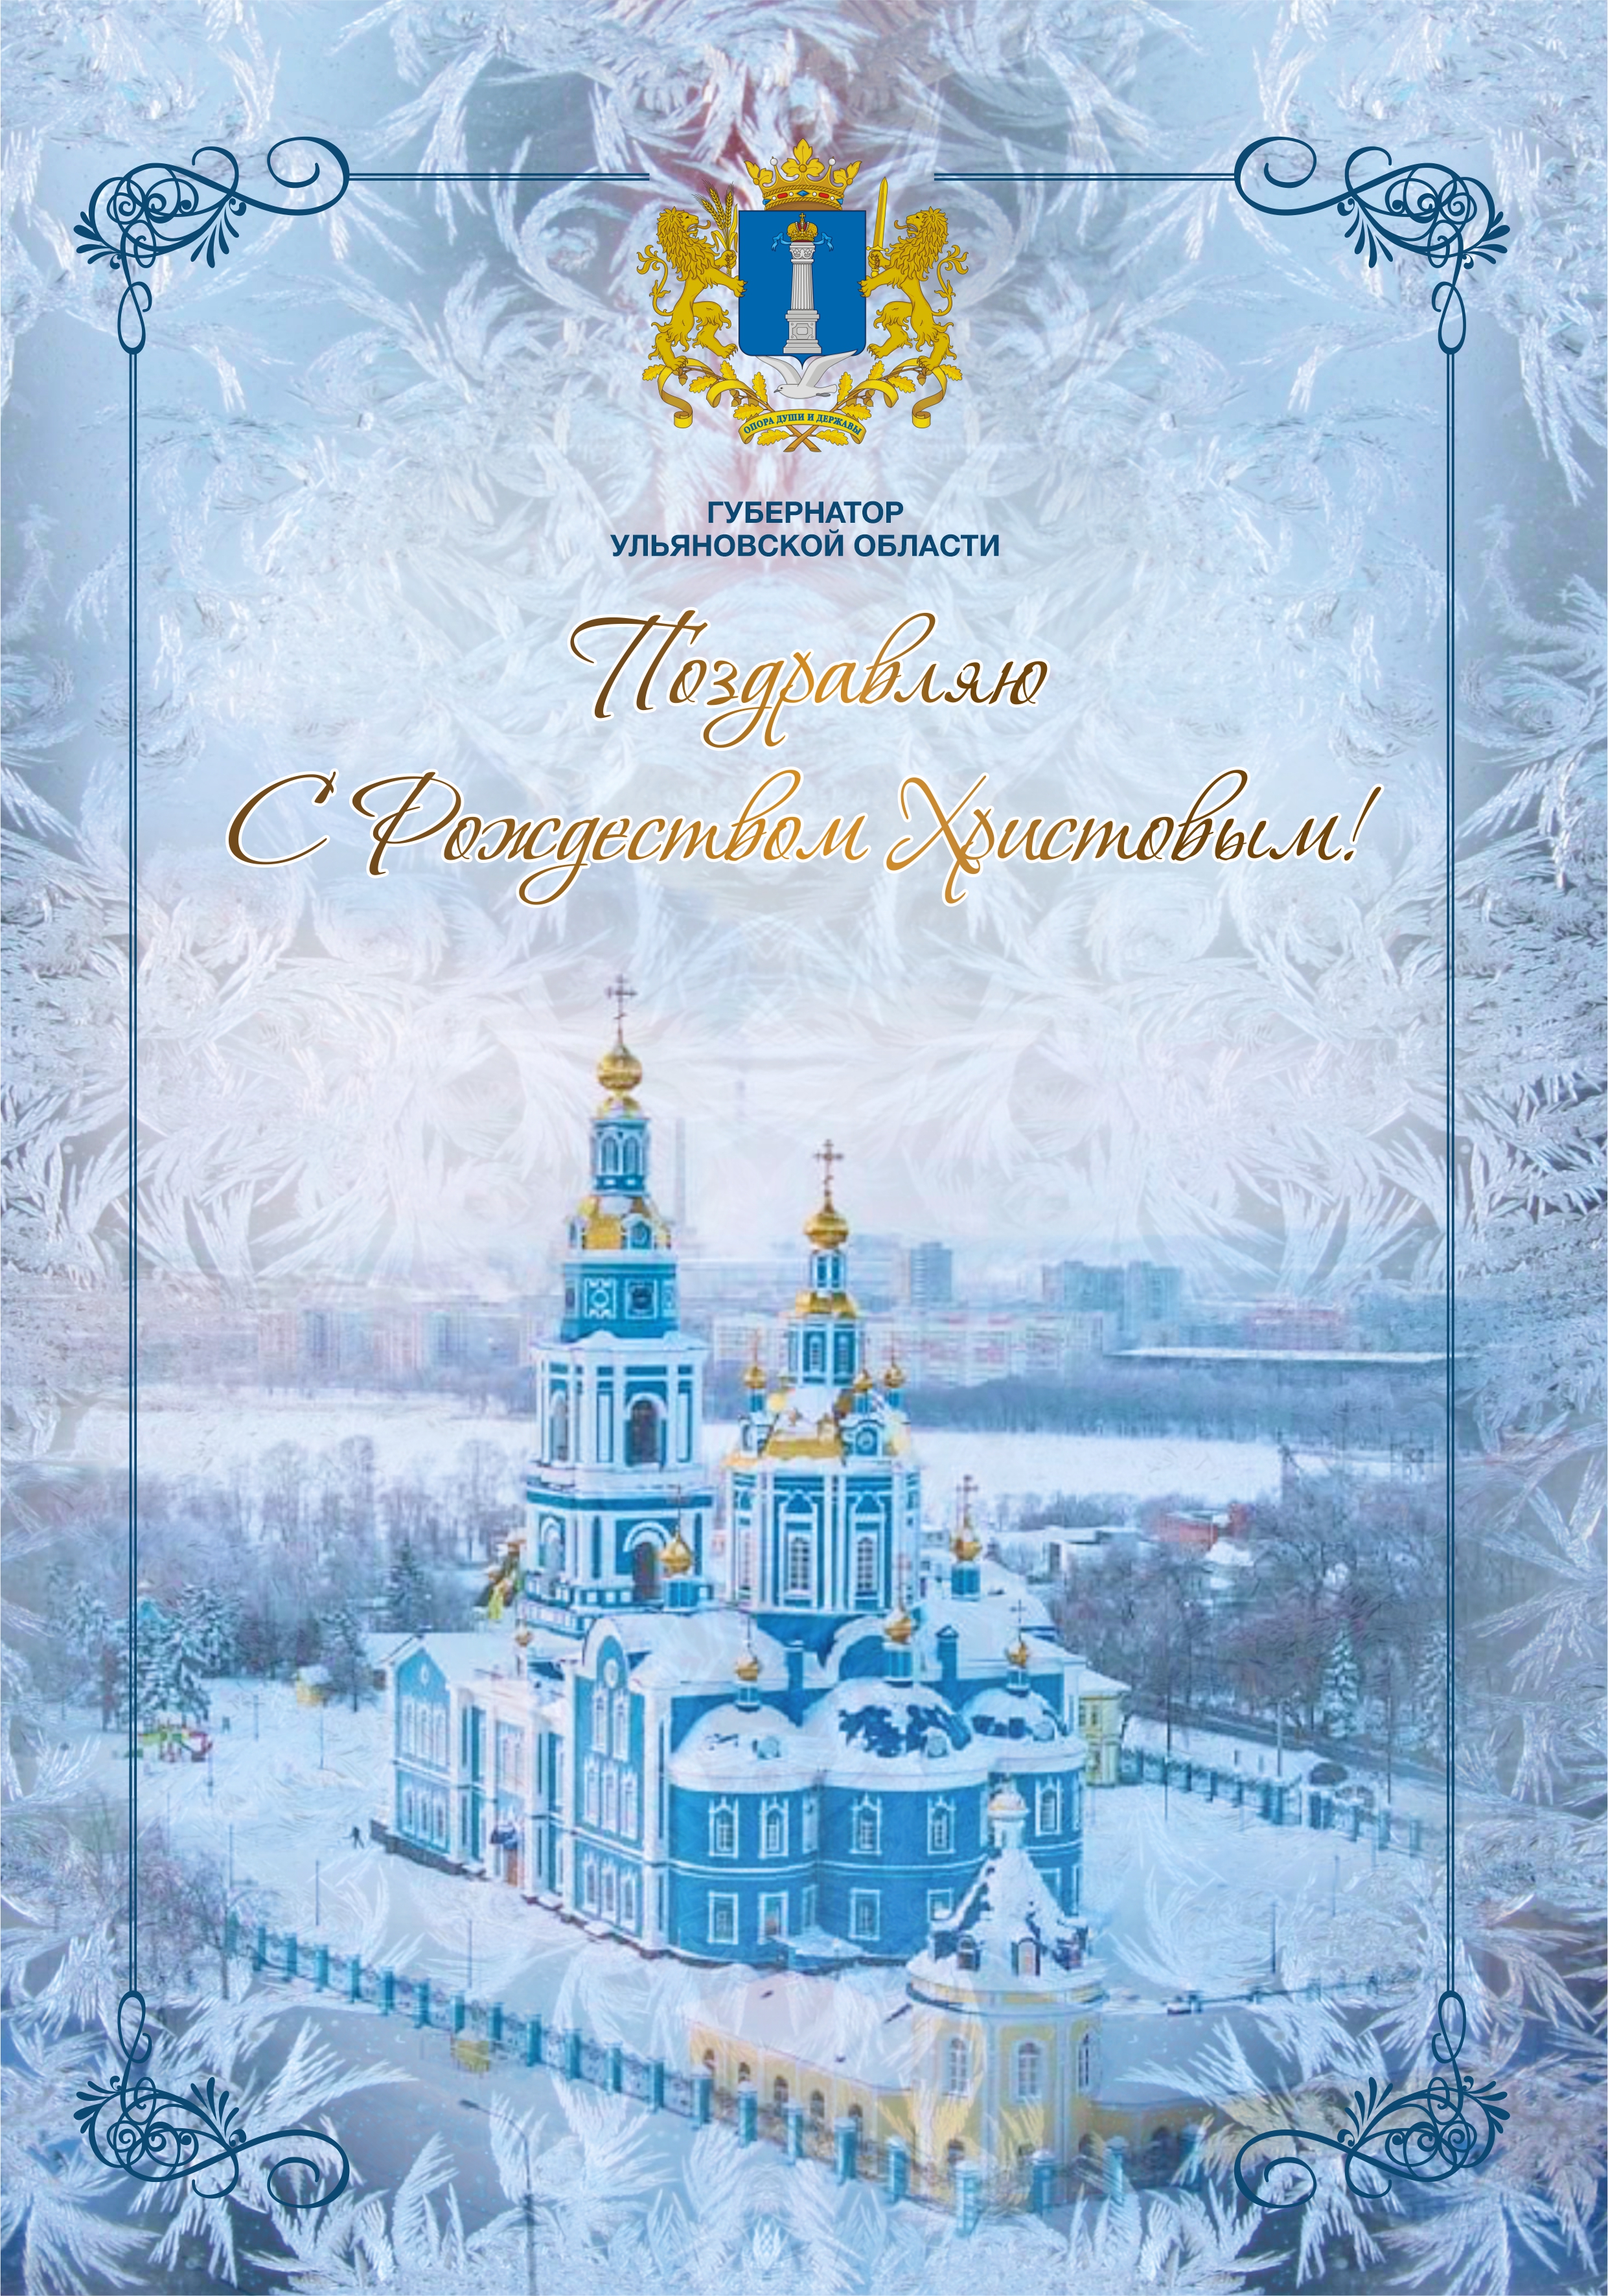 Поздравление с Рождеством Христовым от Губернатора Ульяновской области.